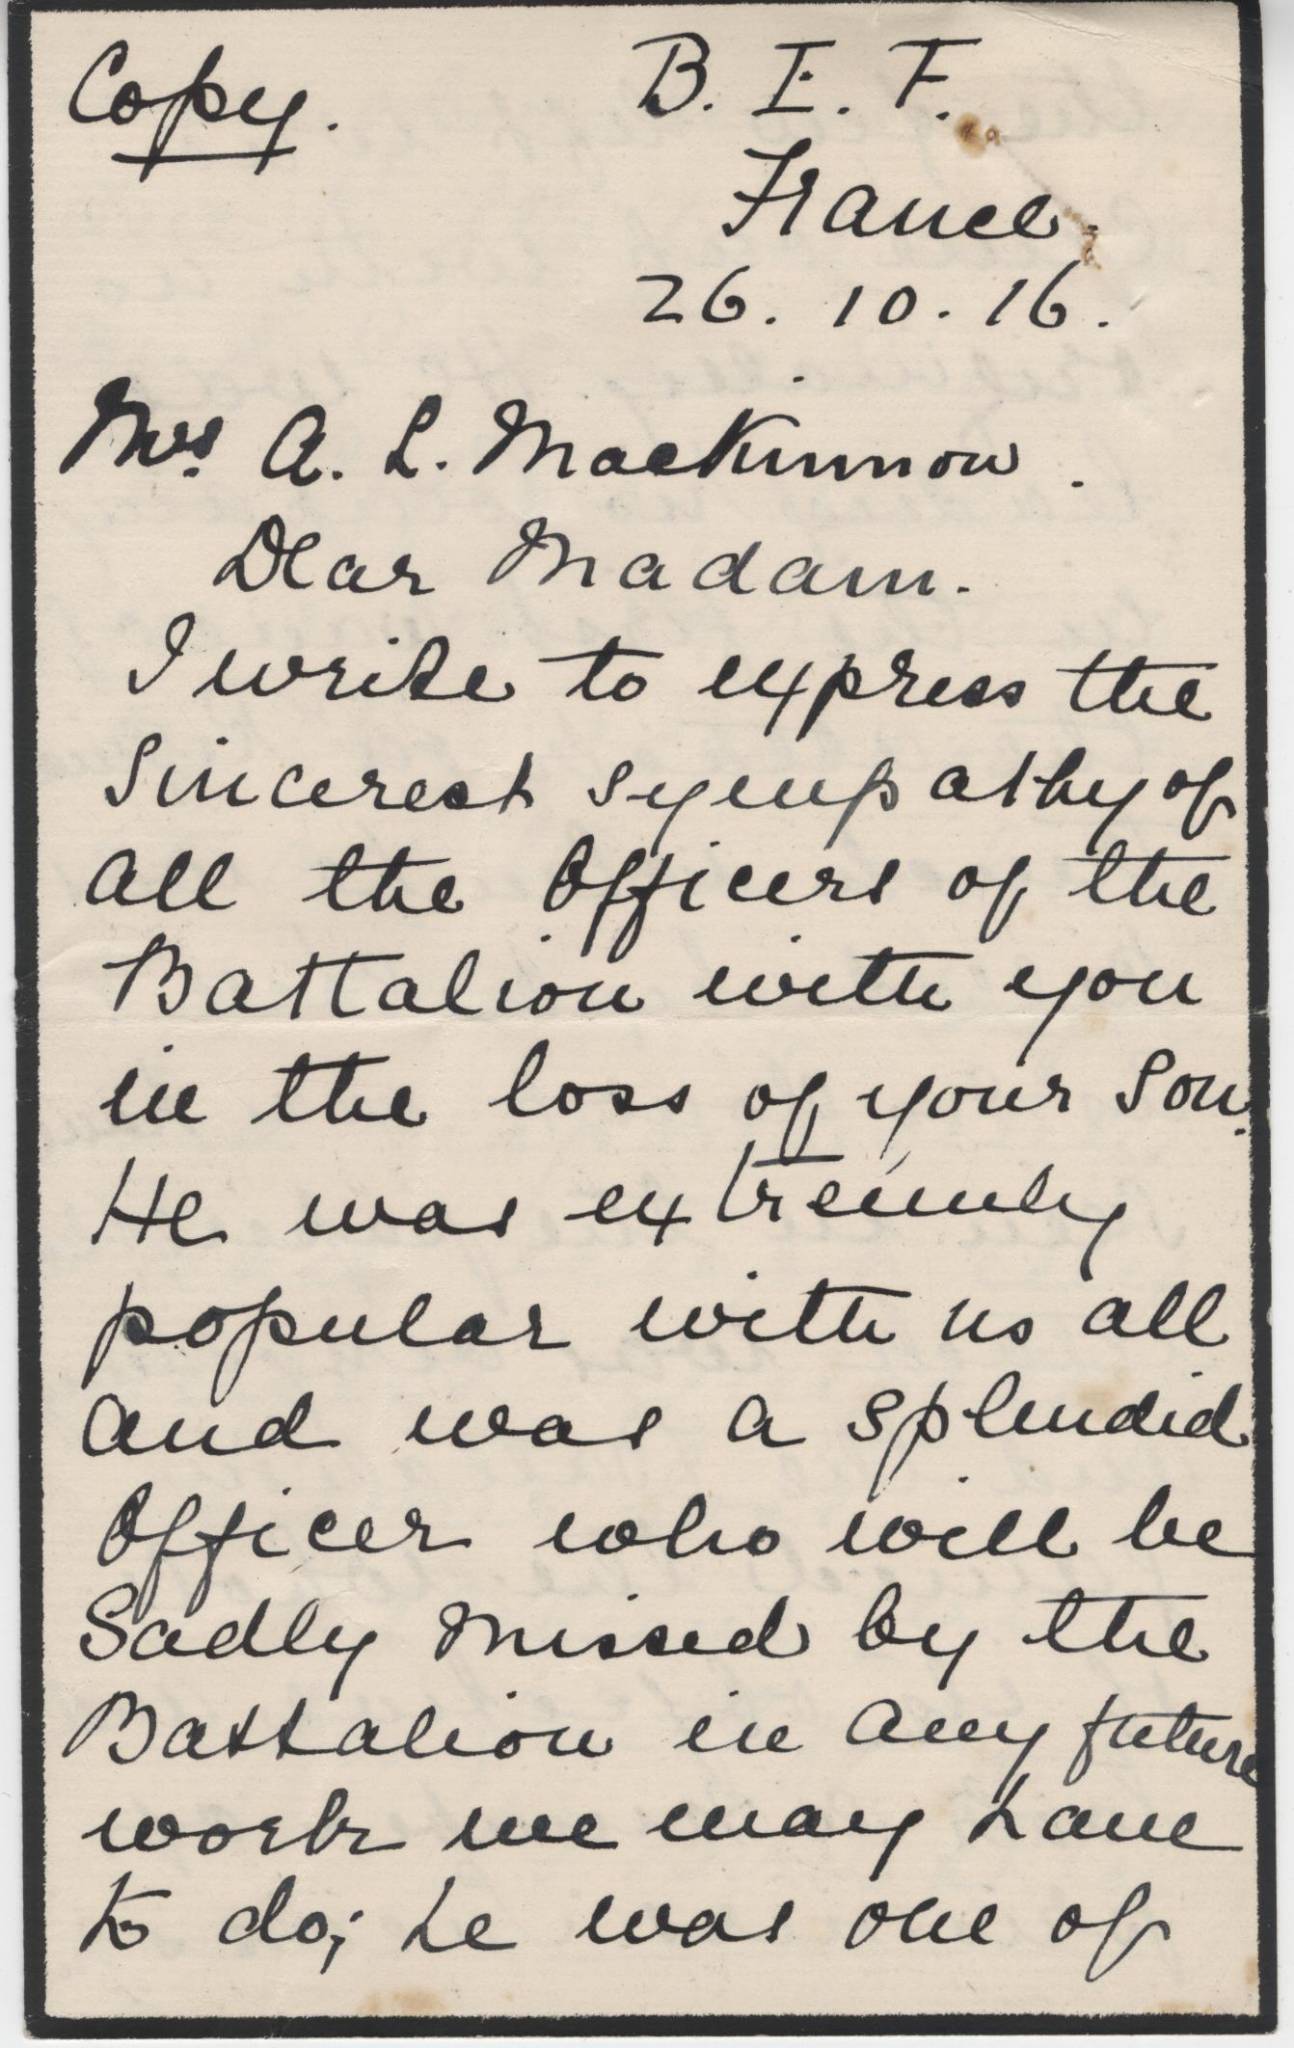 Mackinnon RF Field Letter 1